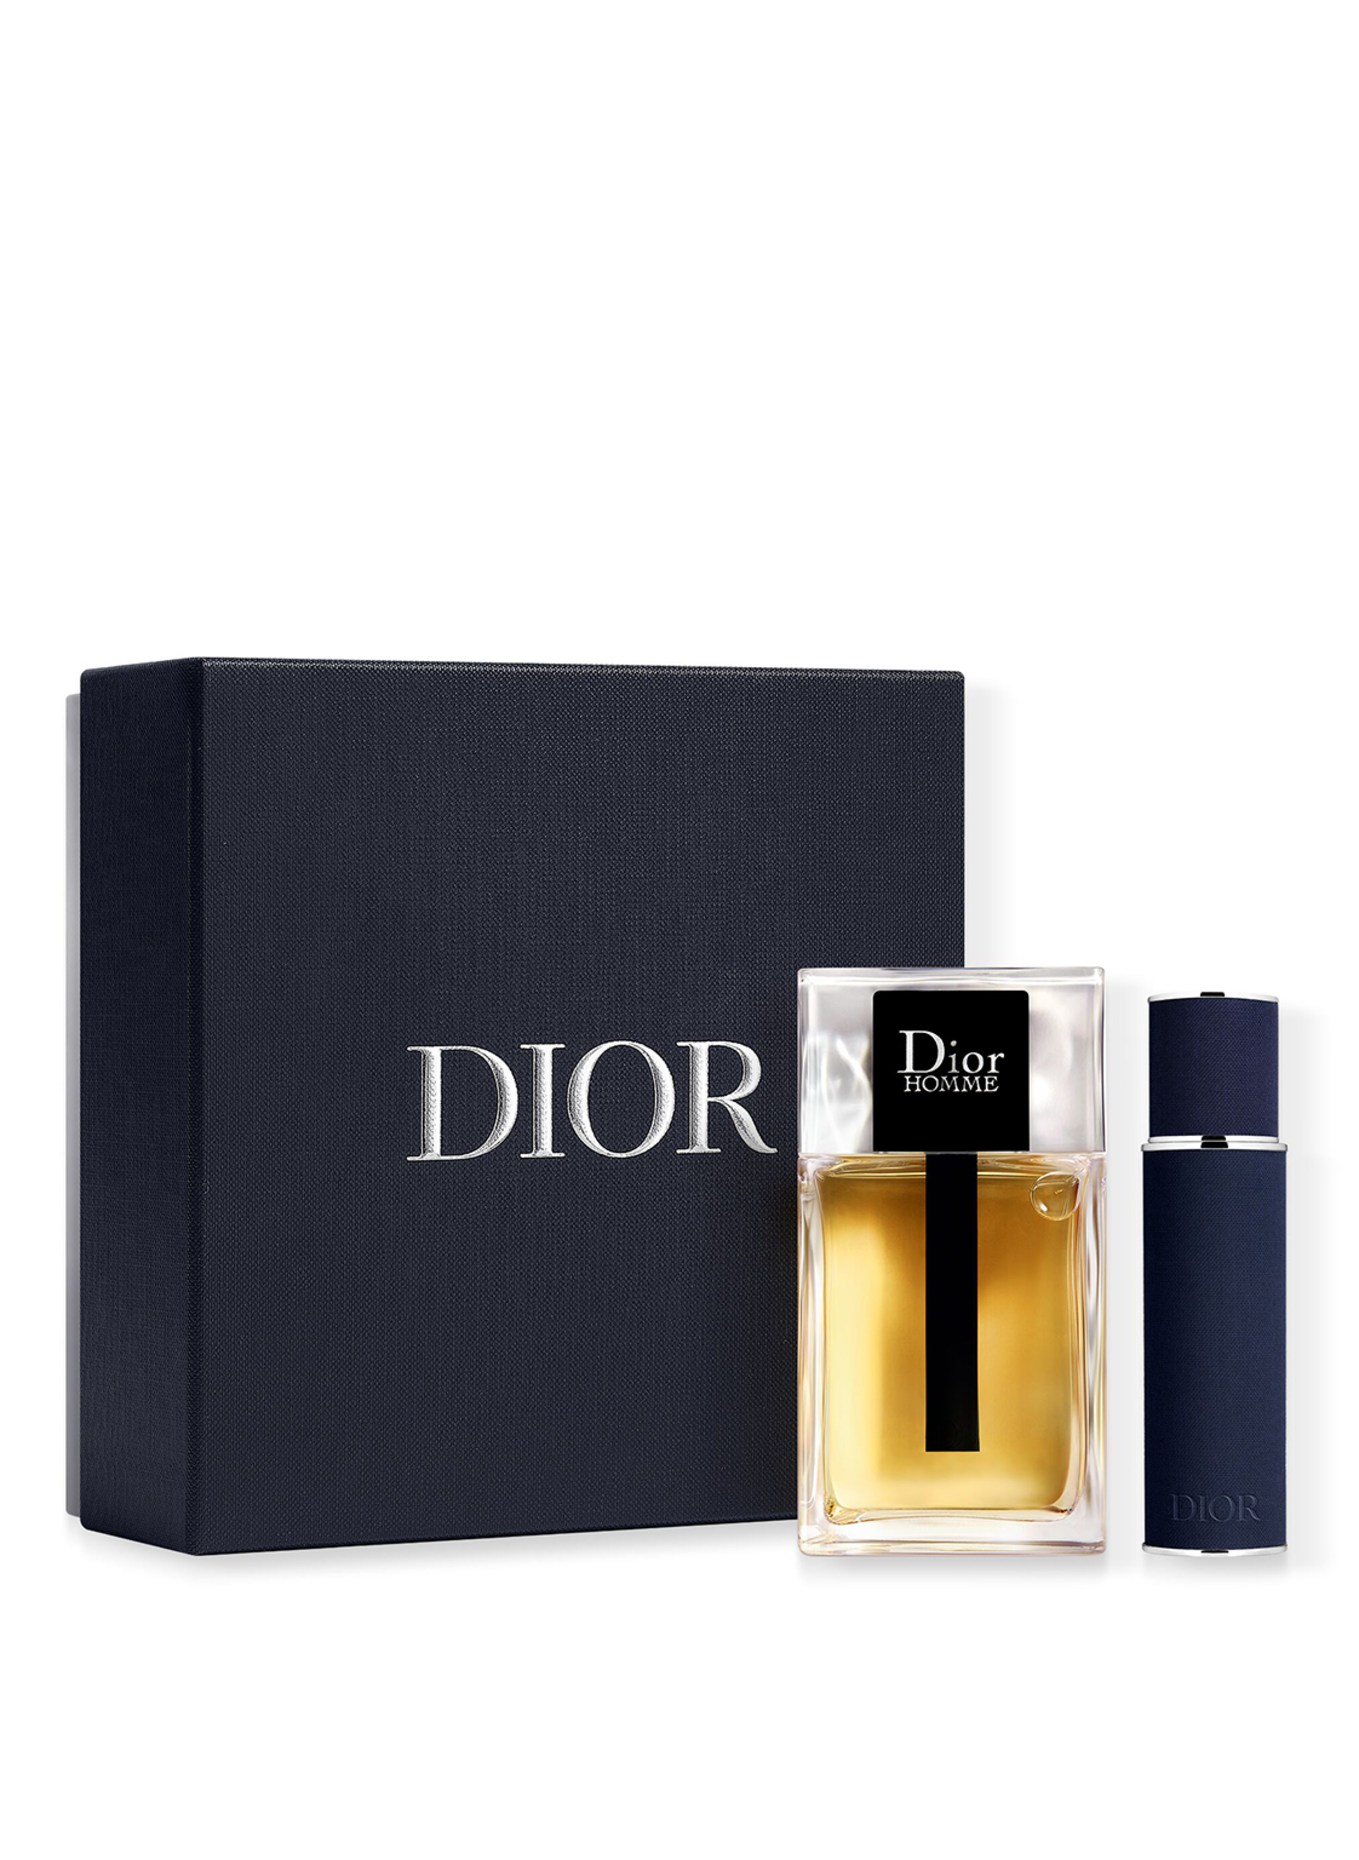 DIOR Dior Homme Set in limitierter Edition (Bild 1)